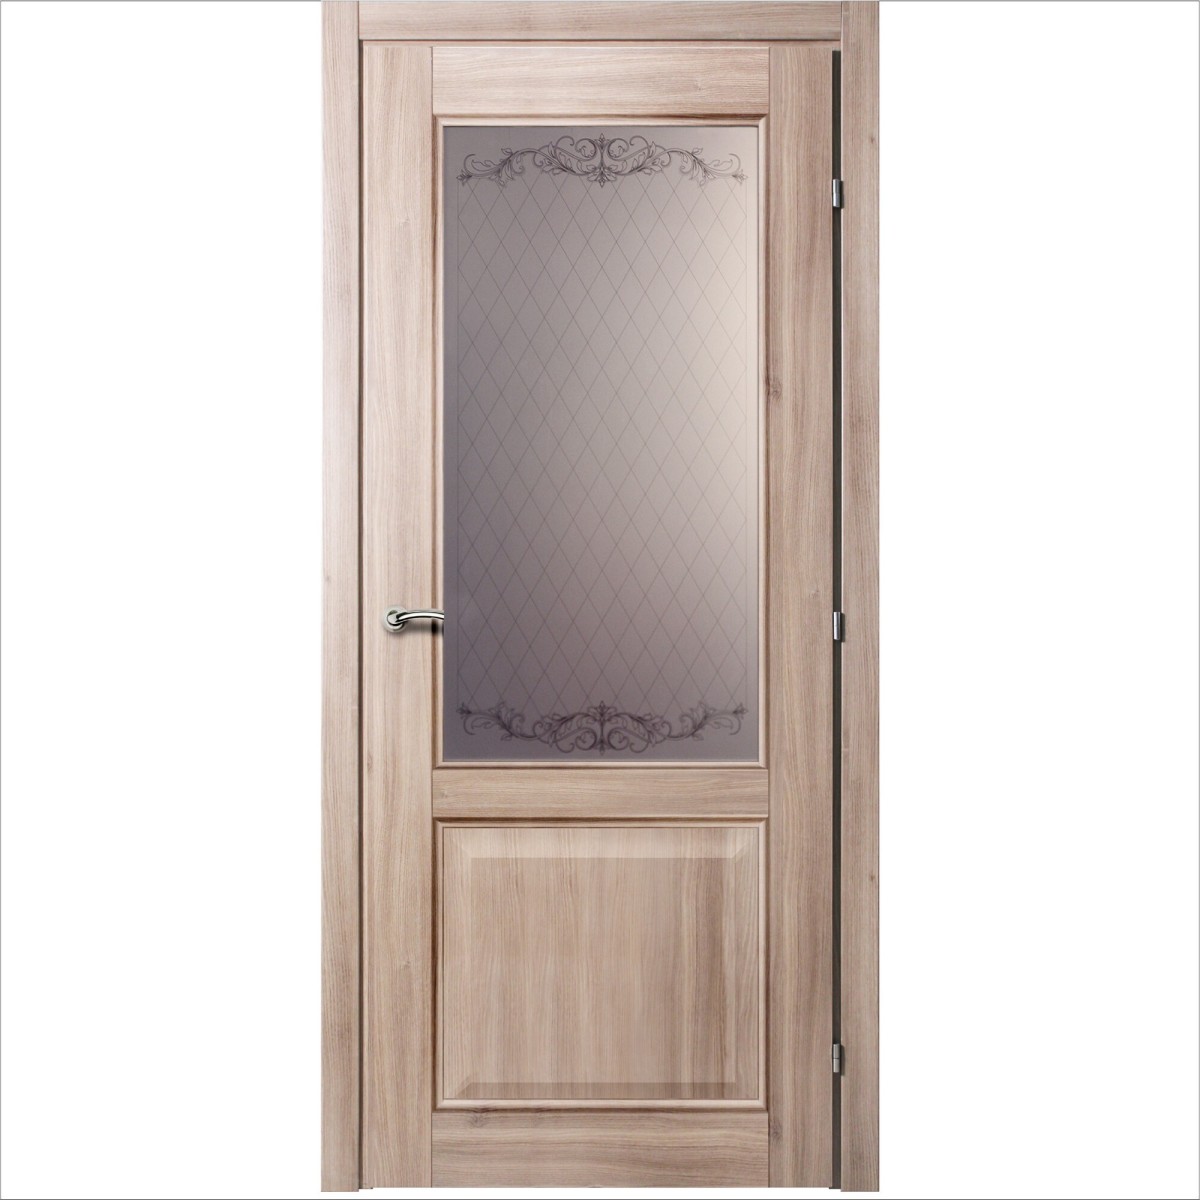 Дверь межкомнатная остеклённая с замком в комплекте Катрин 70x200 см CPL цвет акация